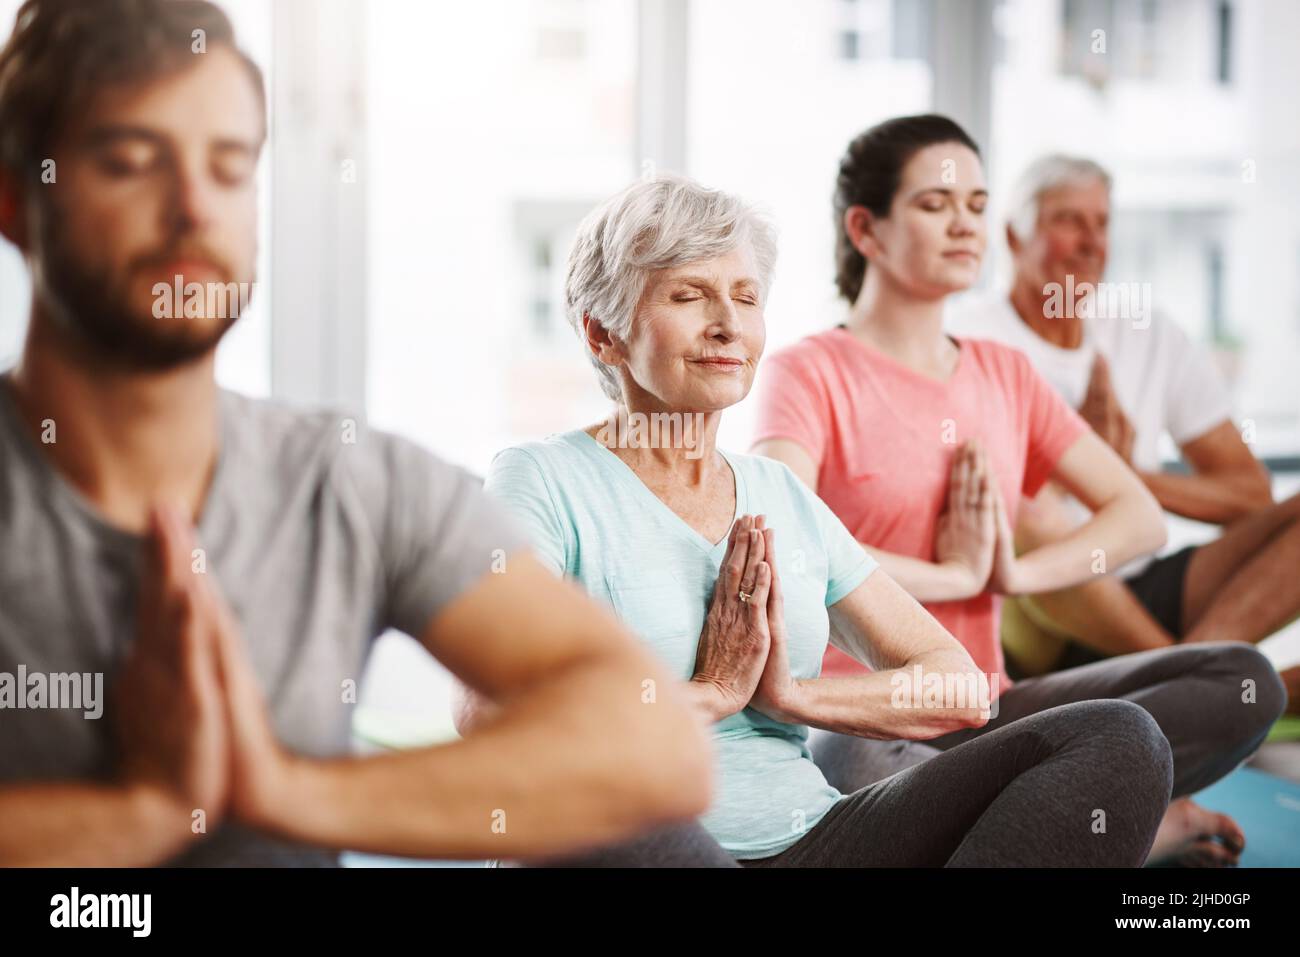 Achtsame Meditation. Eine Gruppe von Menschen meditiert, während sie Yoga praktizieren. Stockfoto